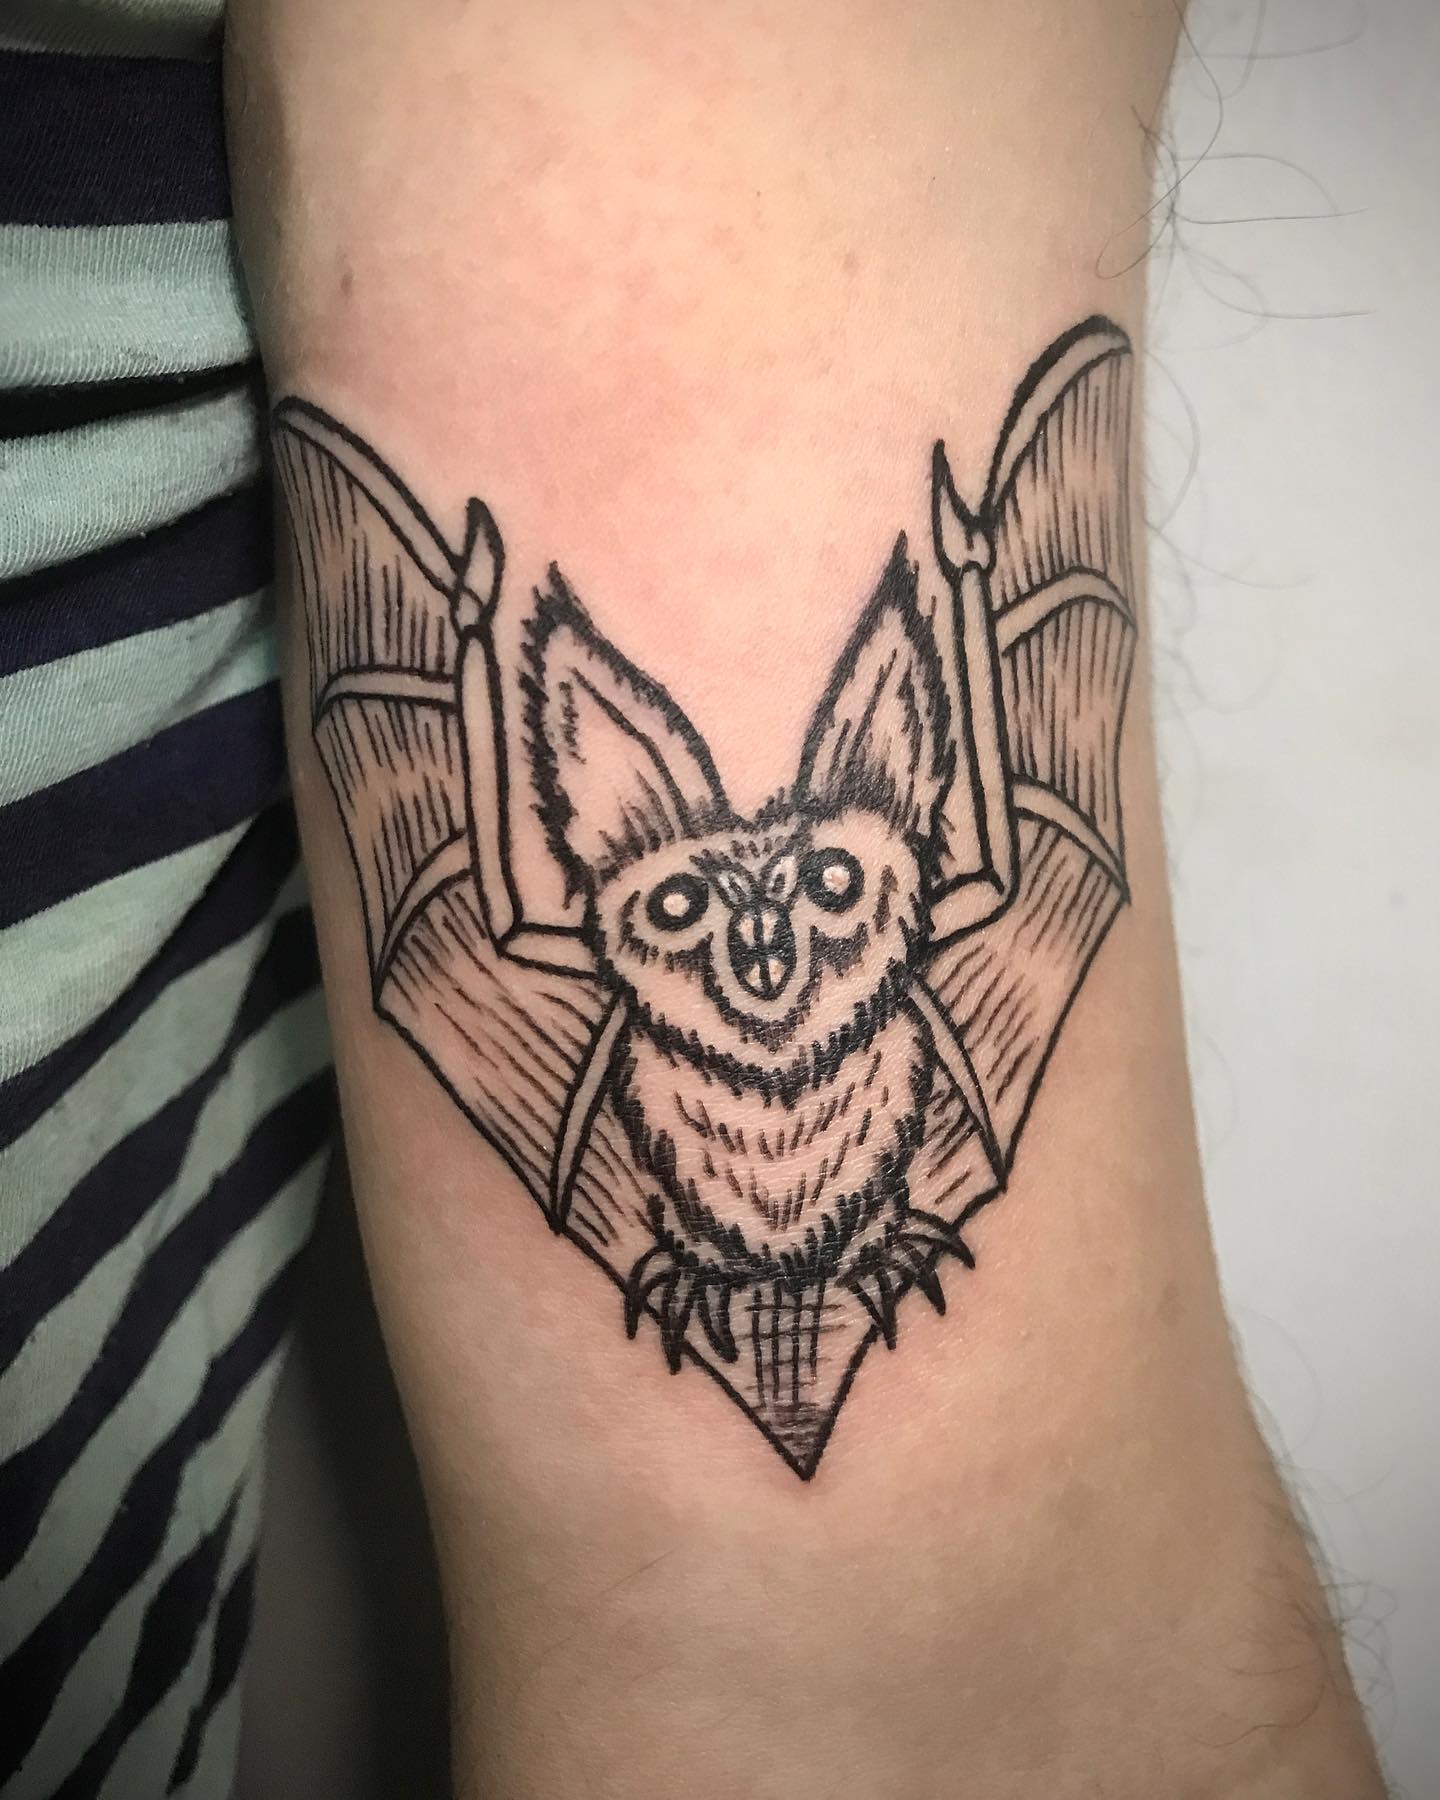 Diseño de tatuaje de murciélago con tinta negra.